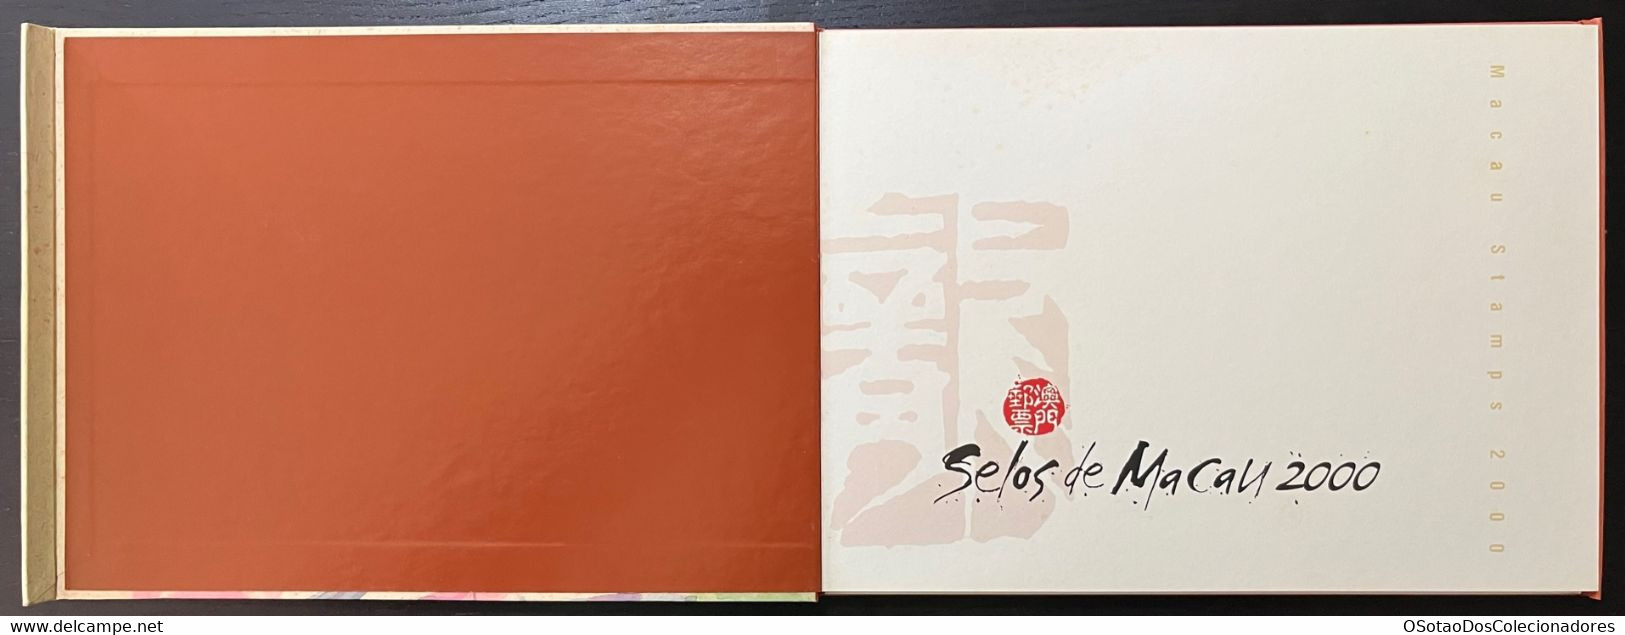 Macau Macao - China Chine - Annual Album 2000 - Macao's Stamps - Livro Anual De Selos De Macau 2000 - Carteira Jaarboek - Volledig Jaar